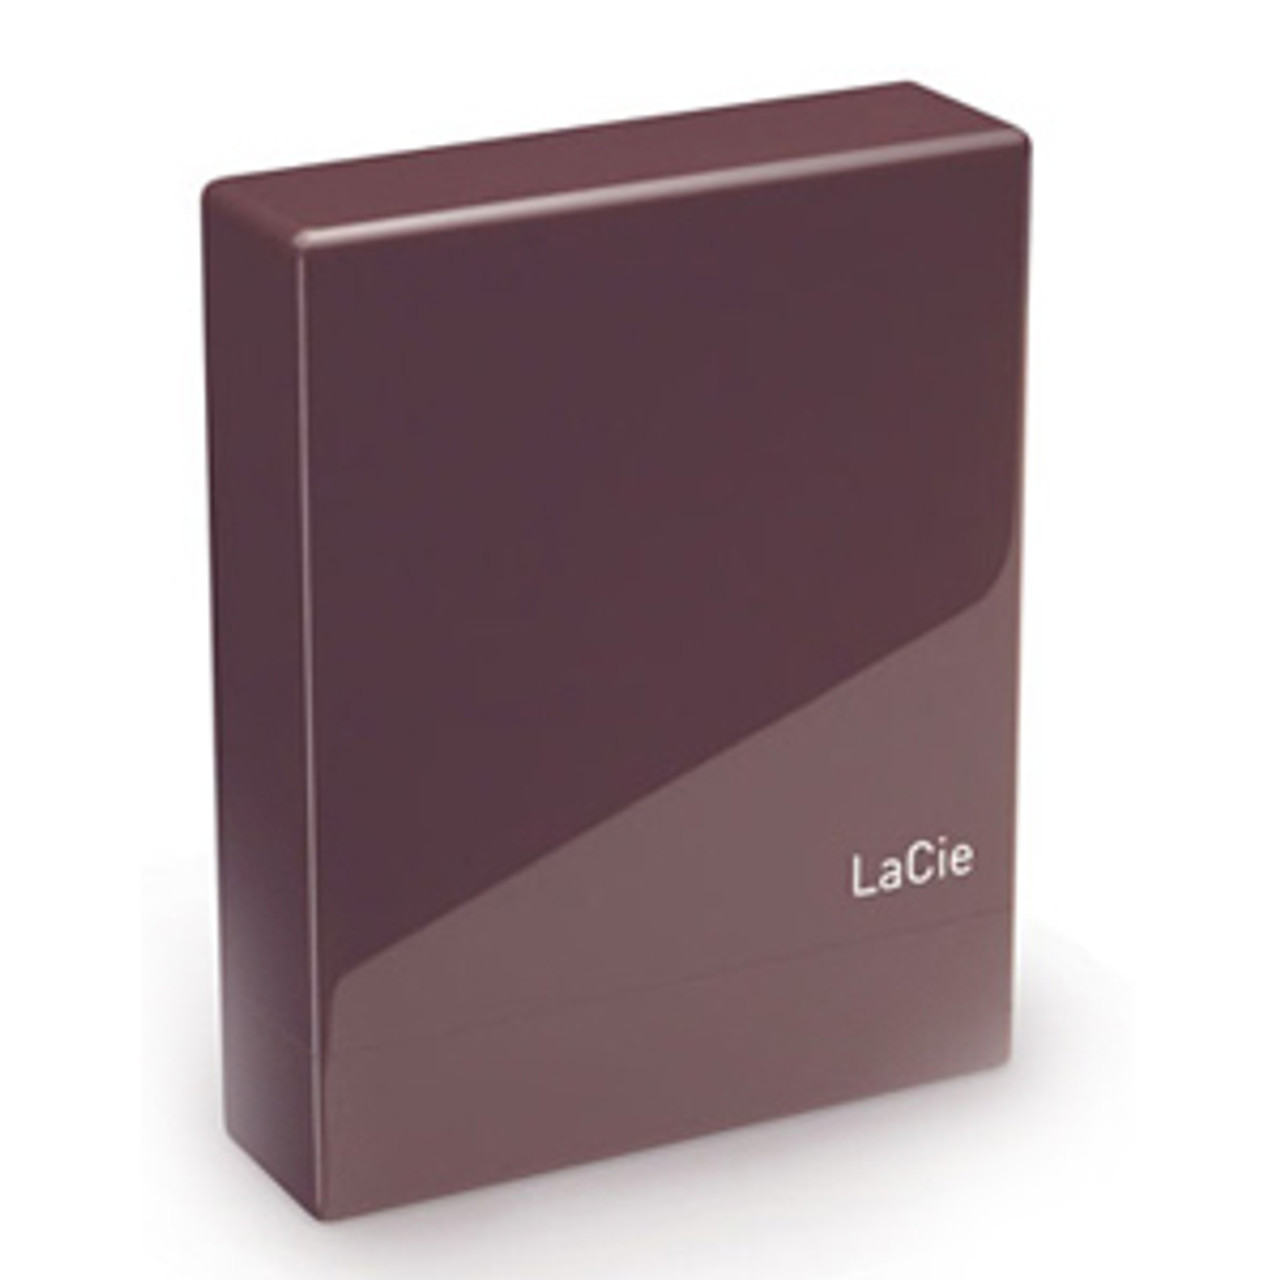 301273 - LaCie Little Disk 120 GB External Hard Drive - USB 2.0 - 5400 rpm - 2 MB Buffer